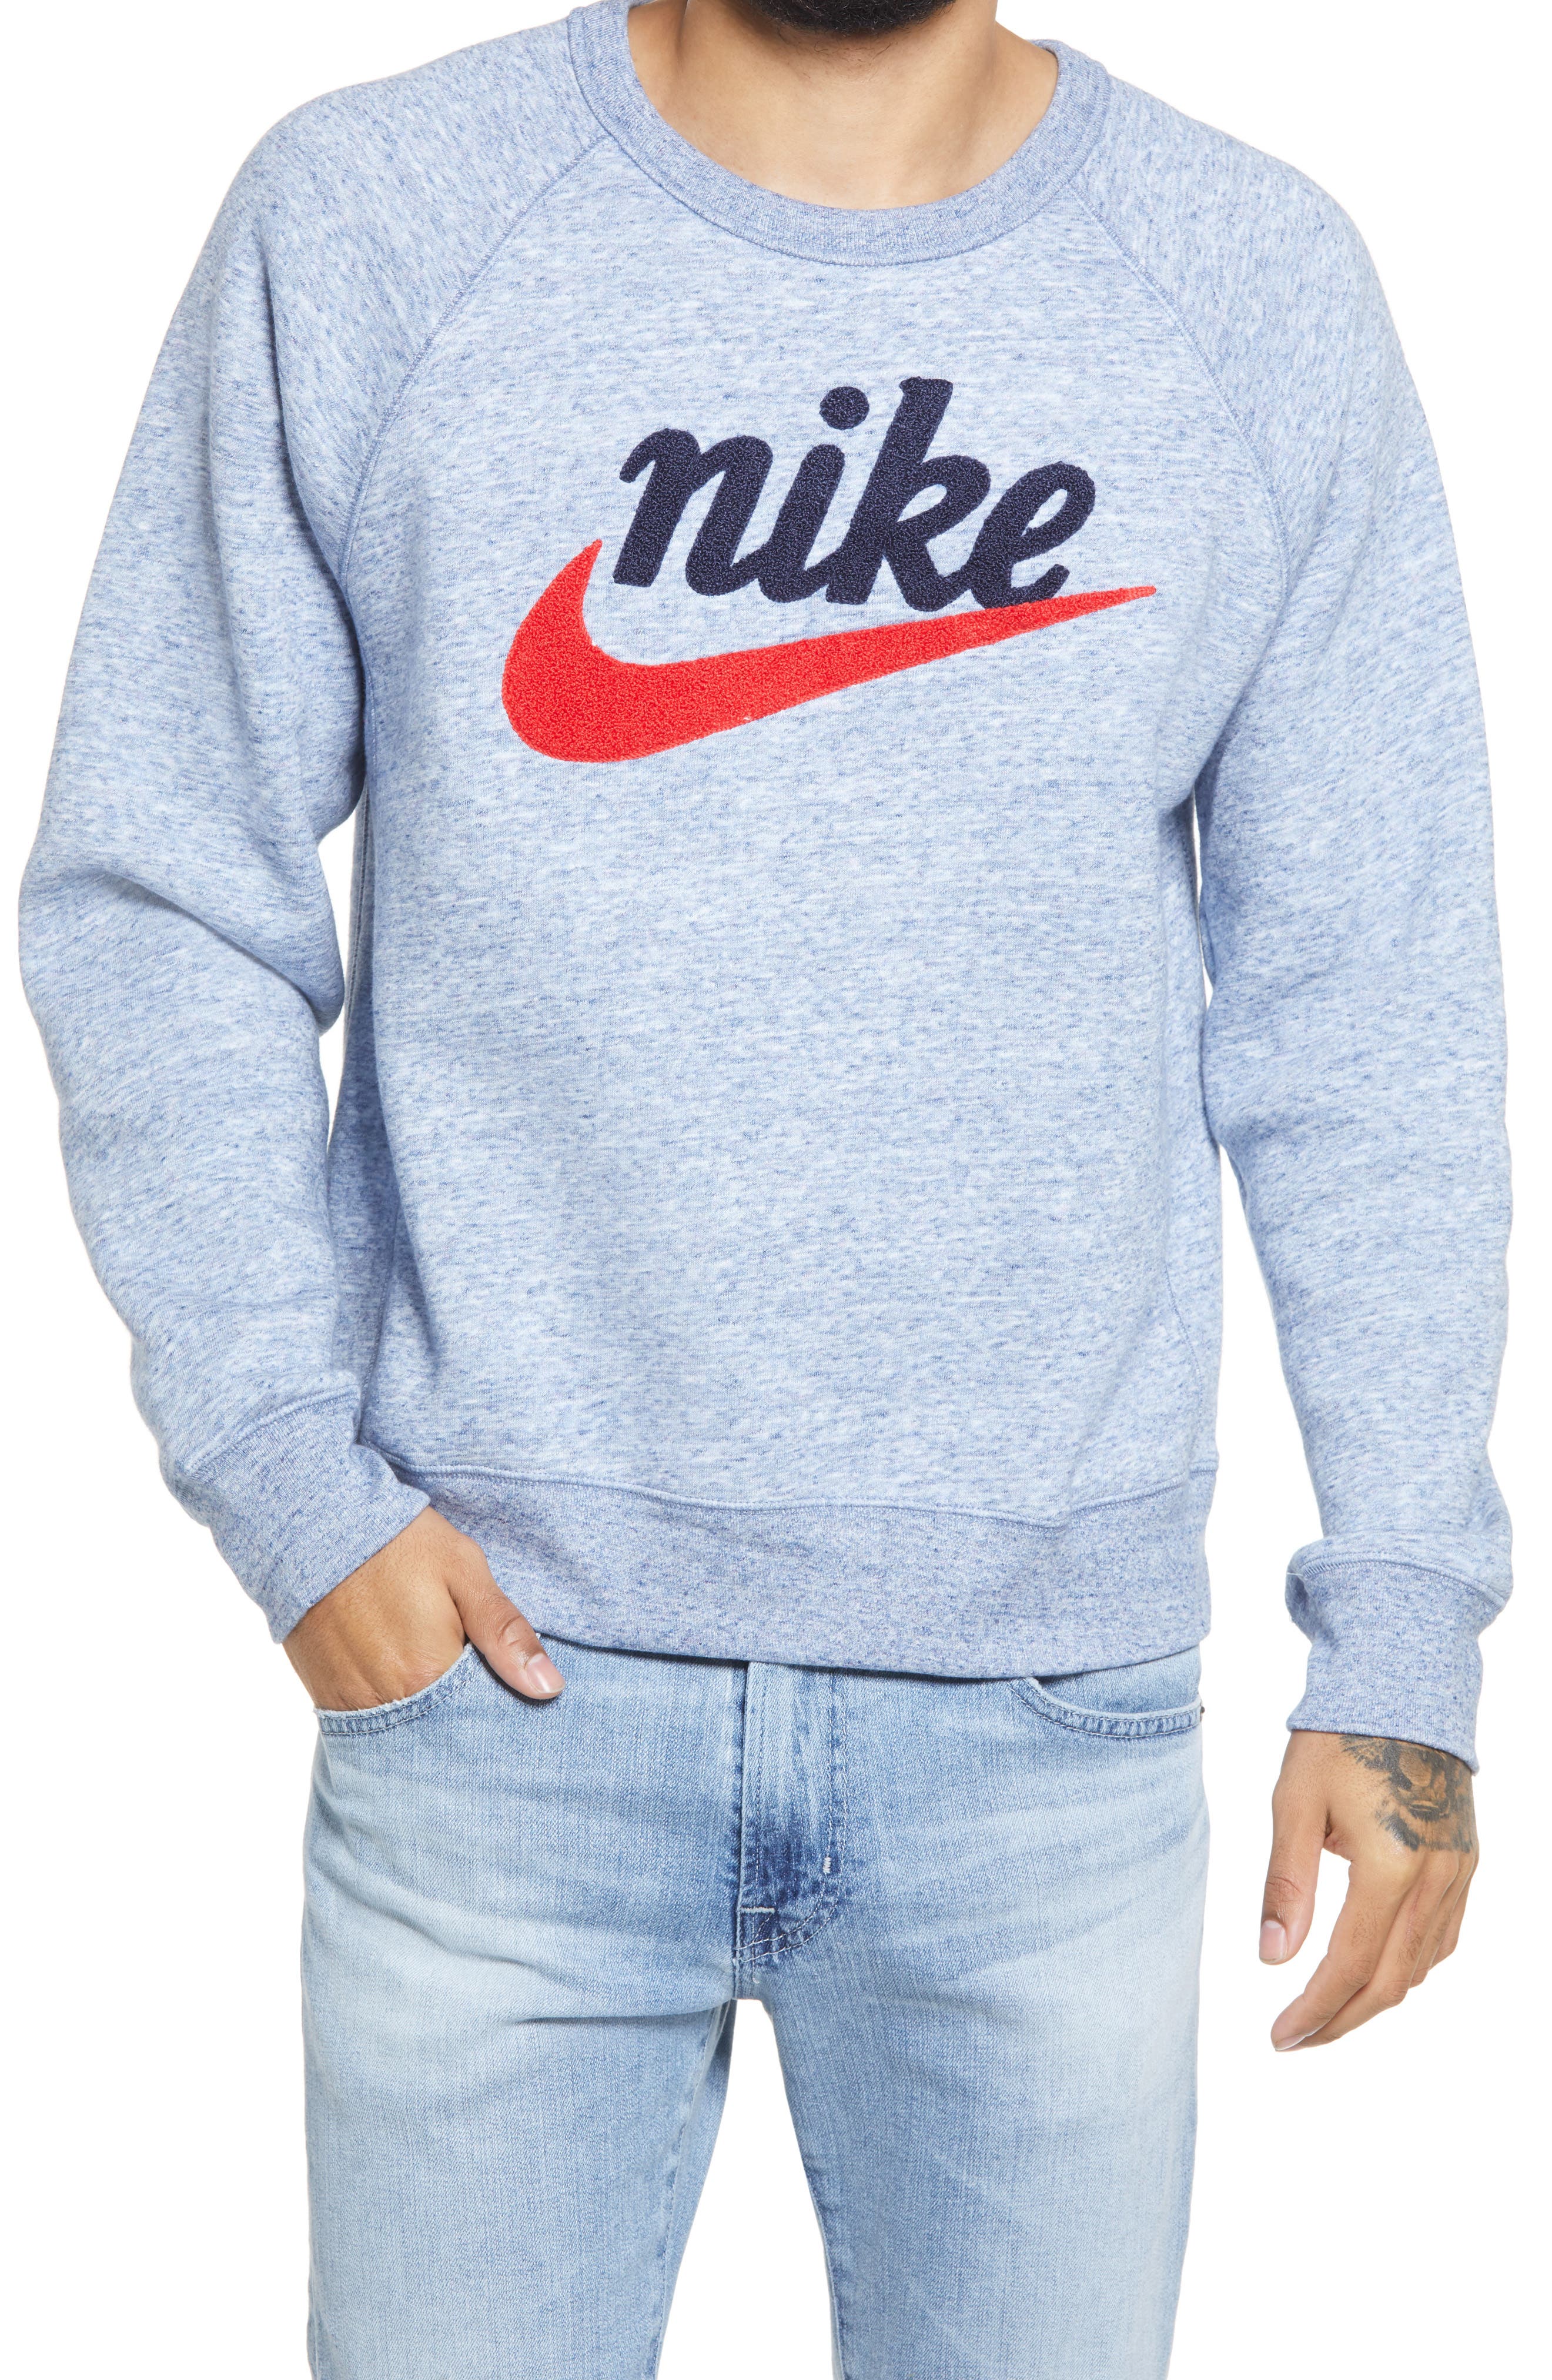 Buy > nike pullover for men > in stock